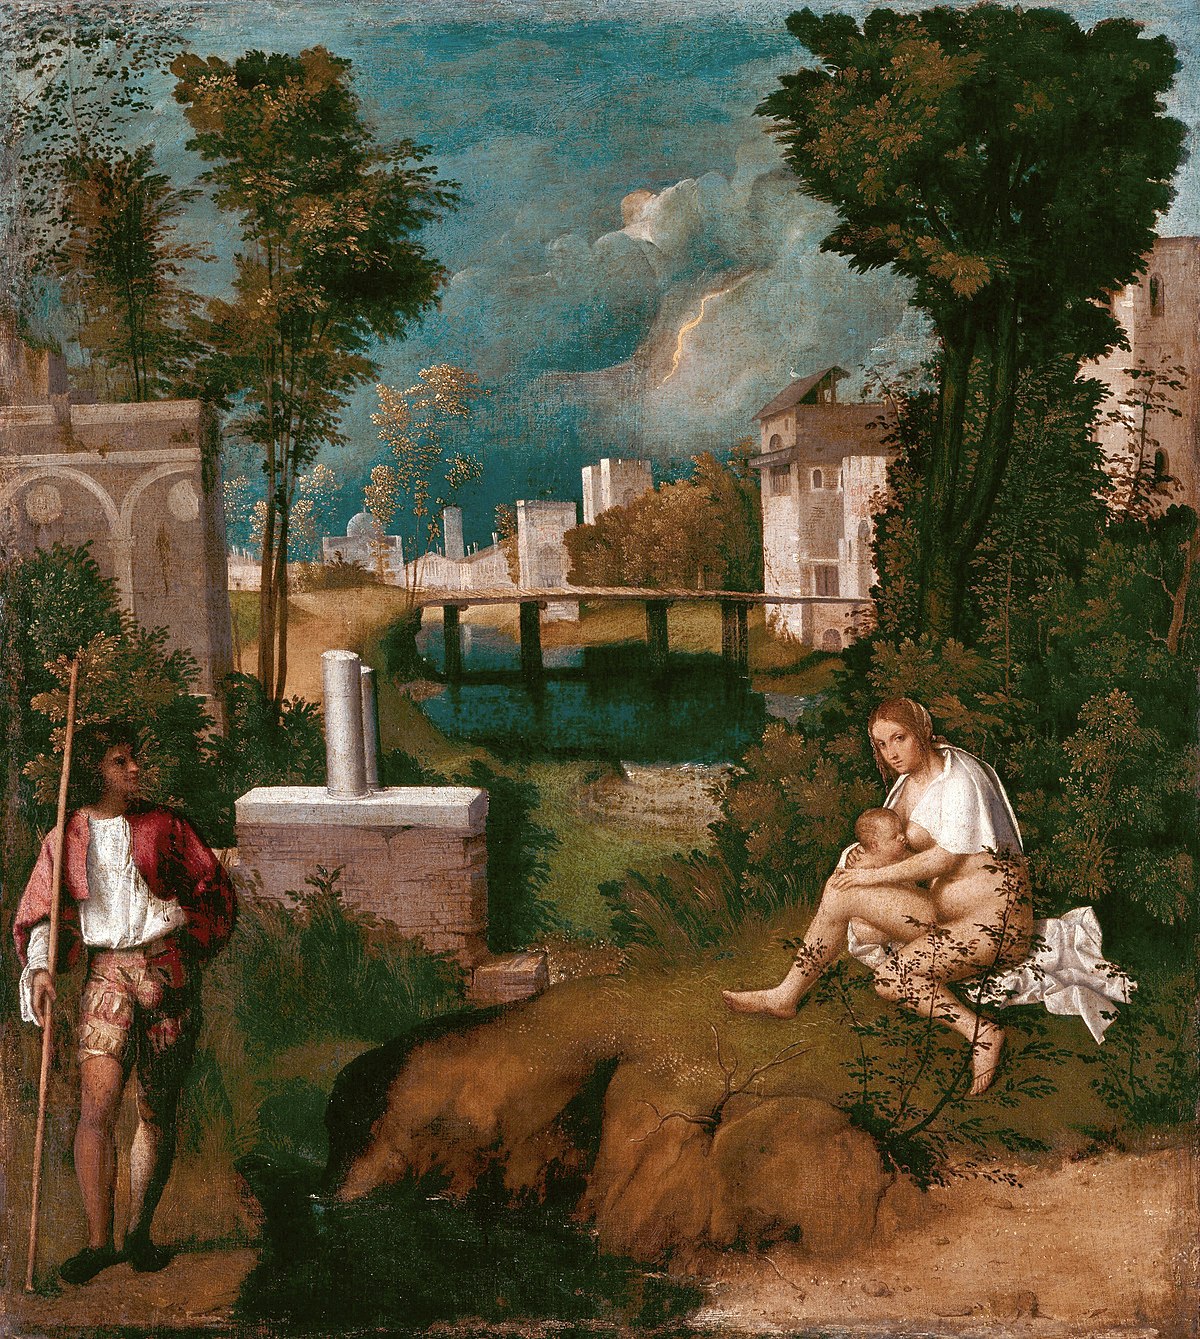 La Tempesta di Giorgione, forse il capolavoro più famoso delle Gallerie dell'Accademia 